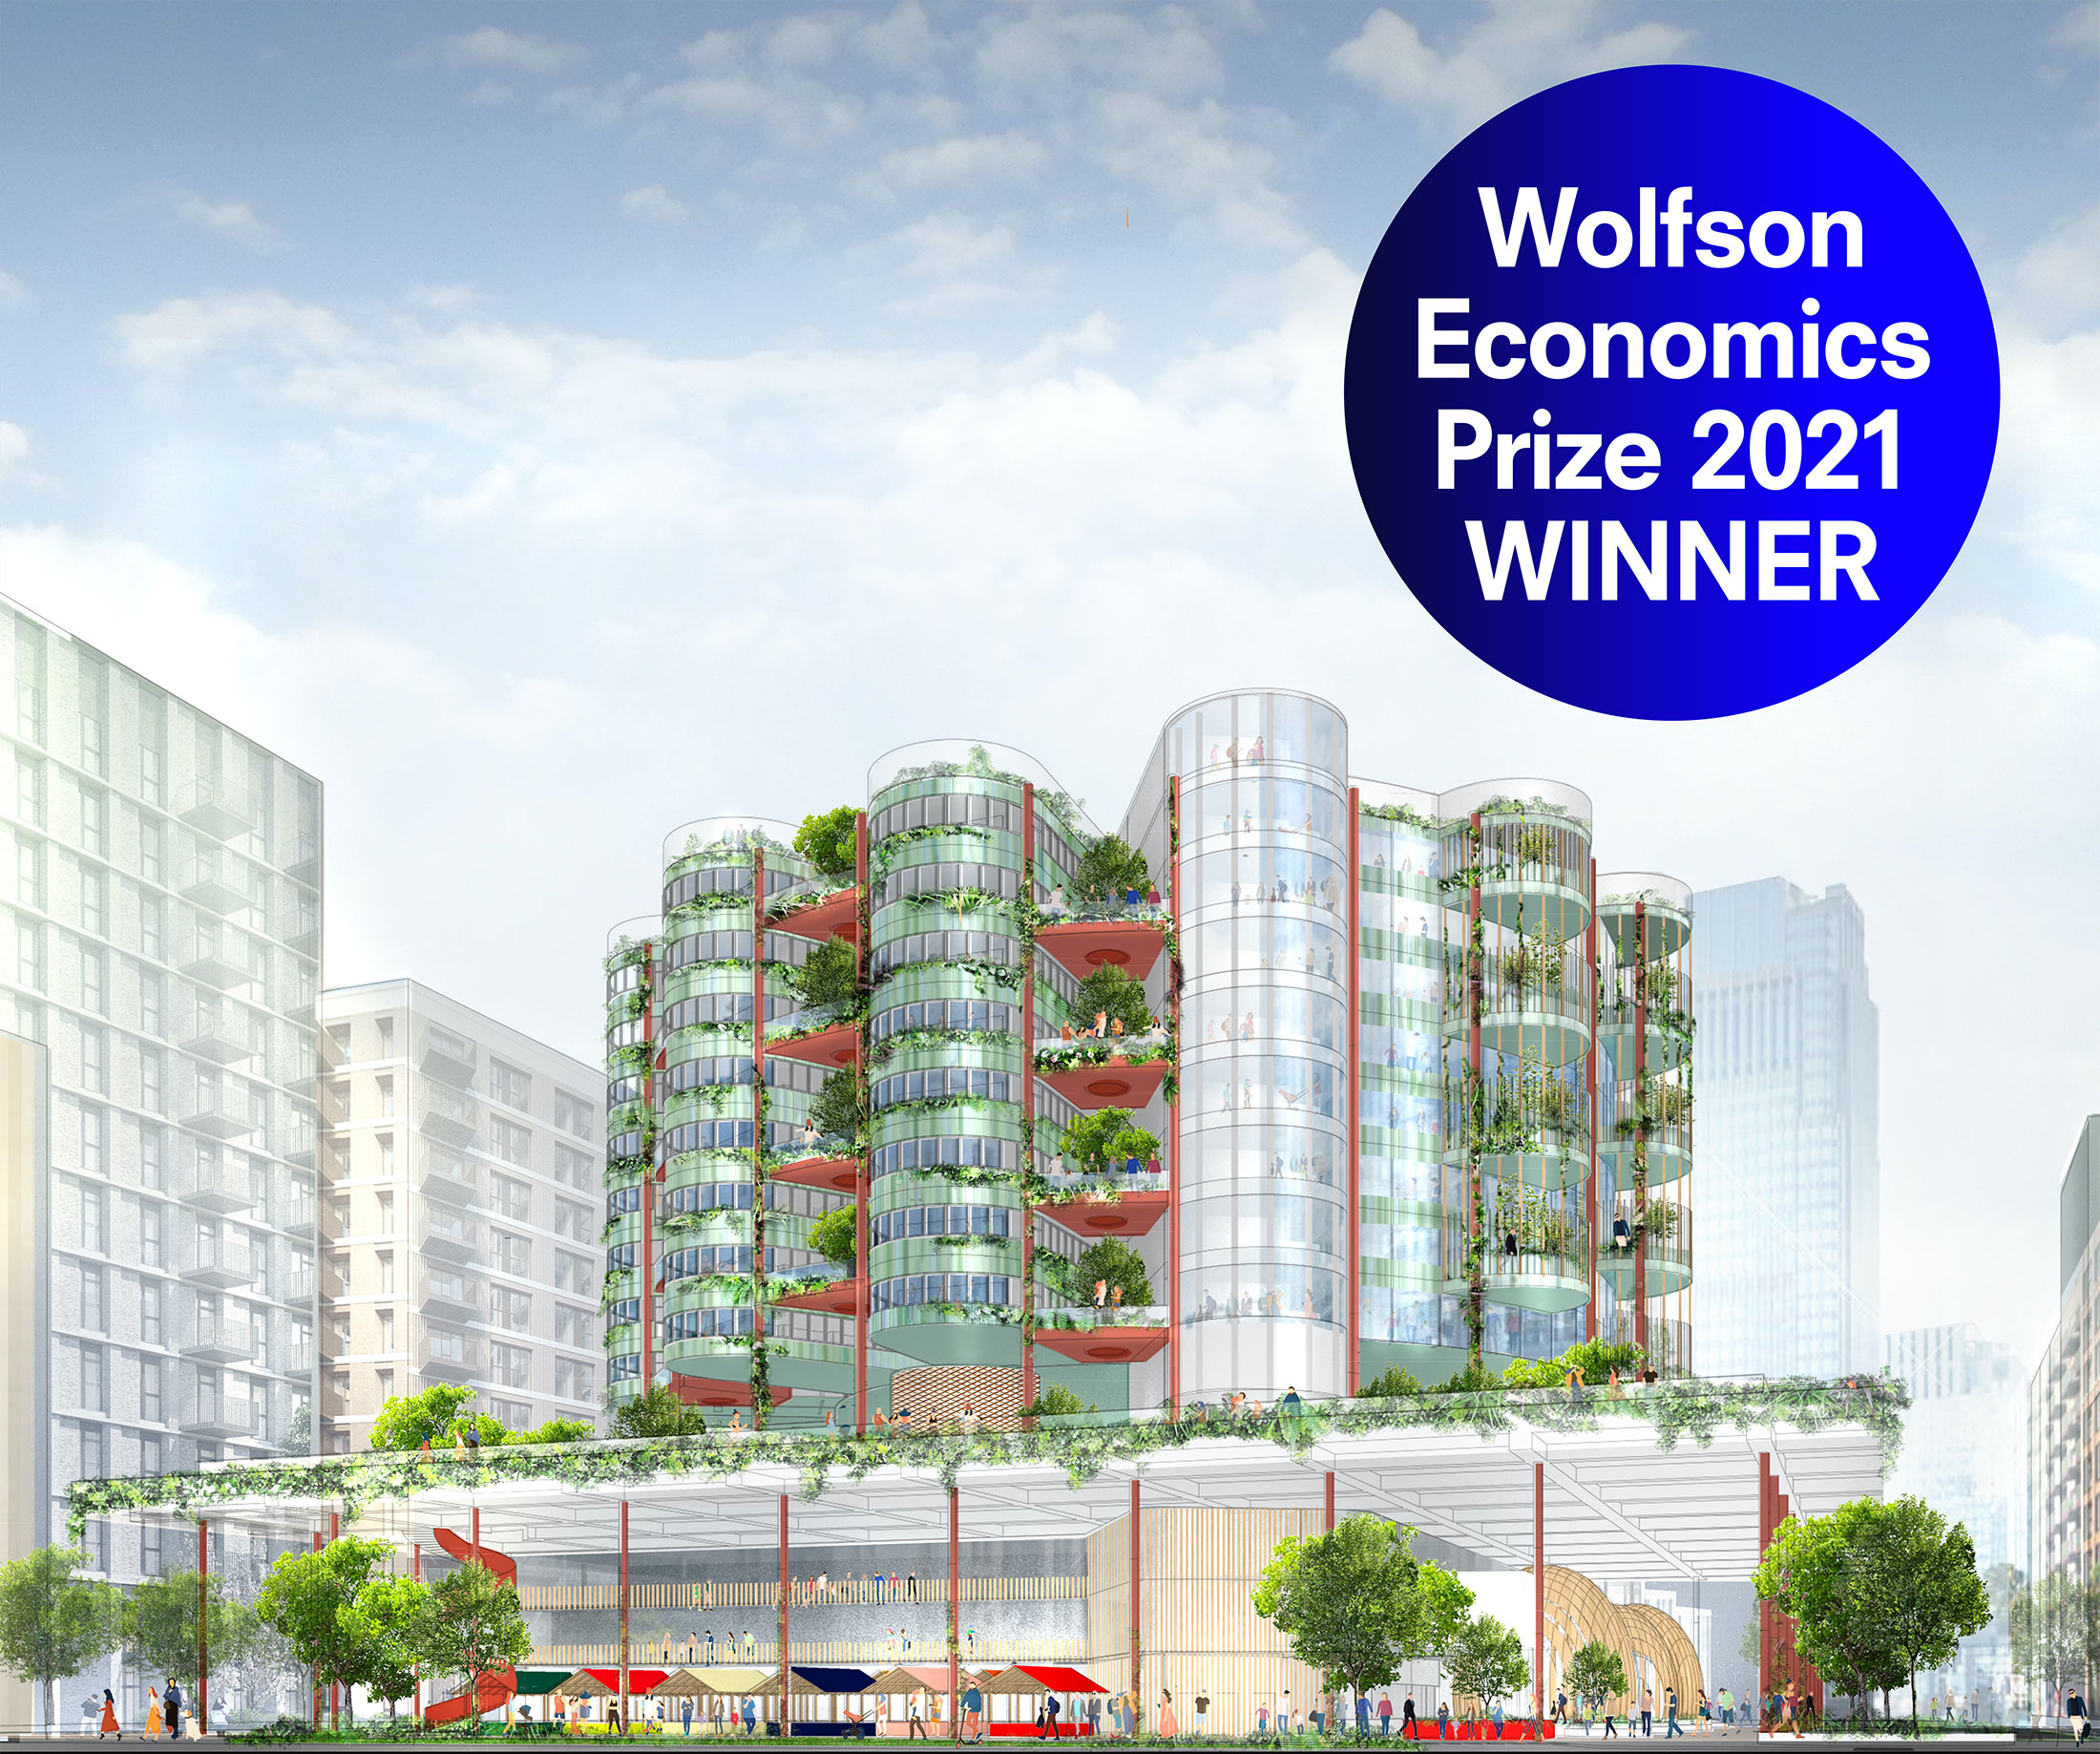 Wolfson Economics Prize 2021 Winner